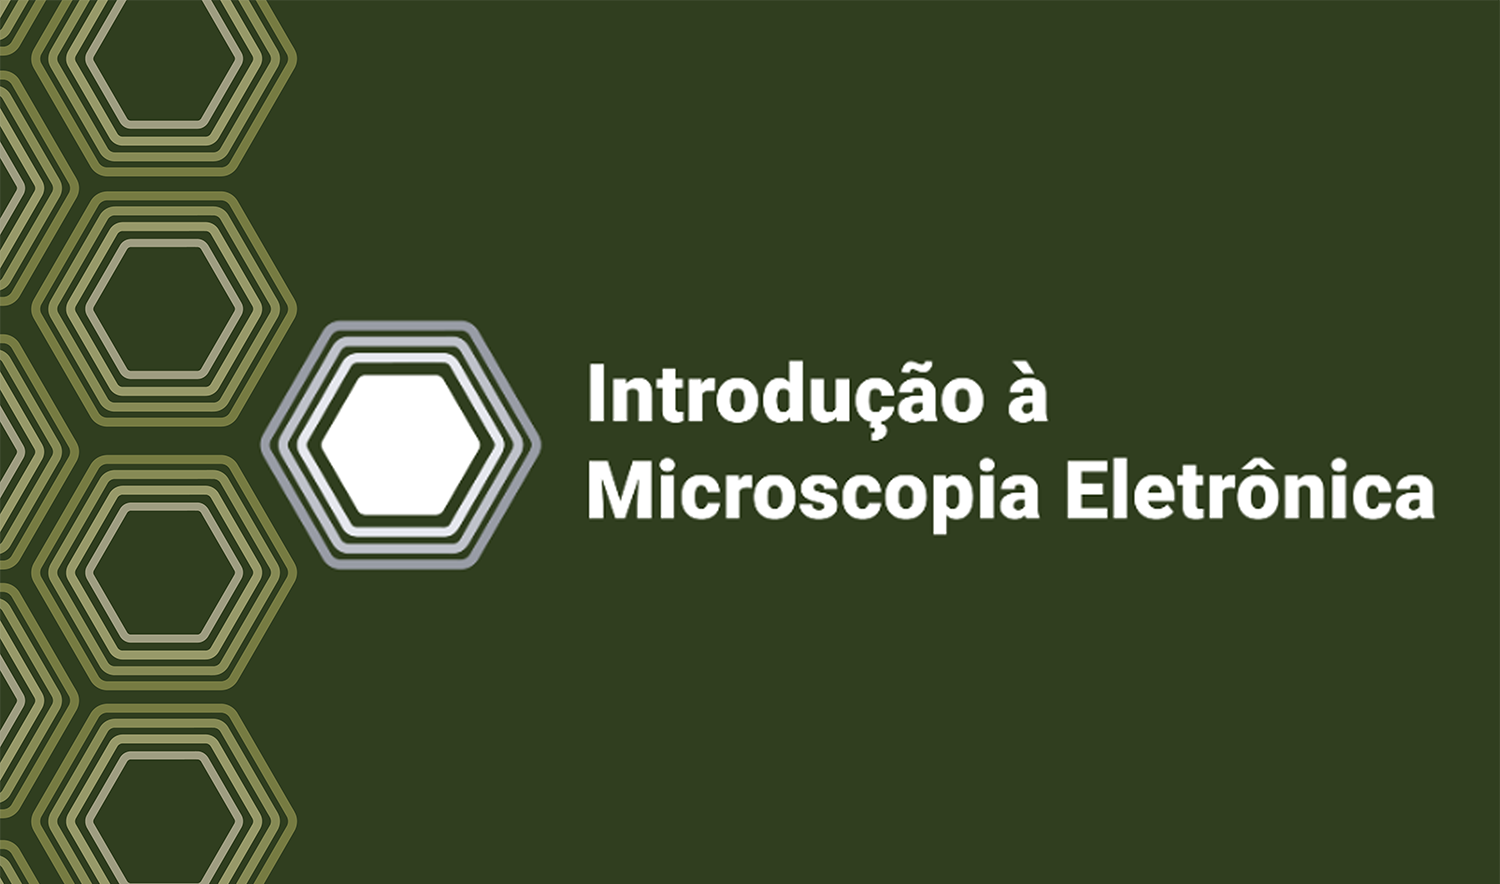 CNPEM abre inscrição para curso de Microscopia Eletrônica